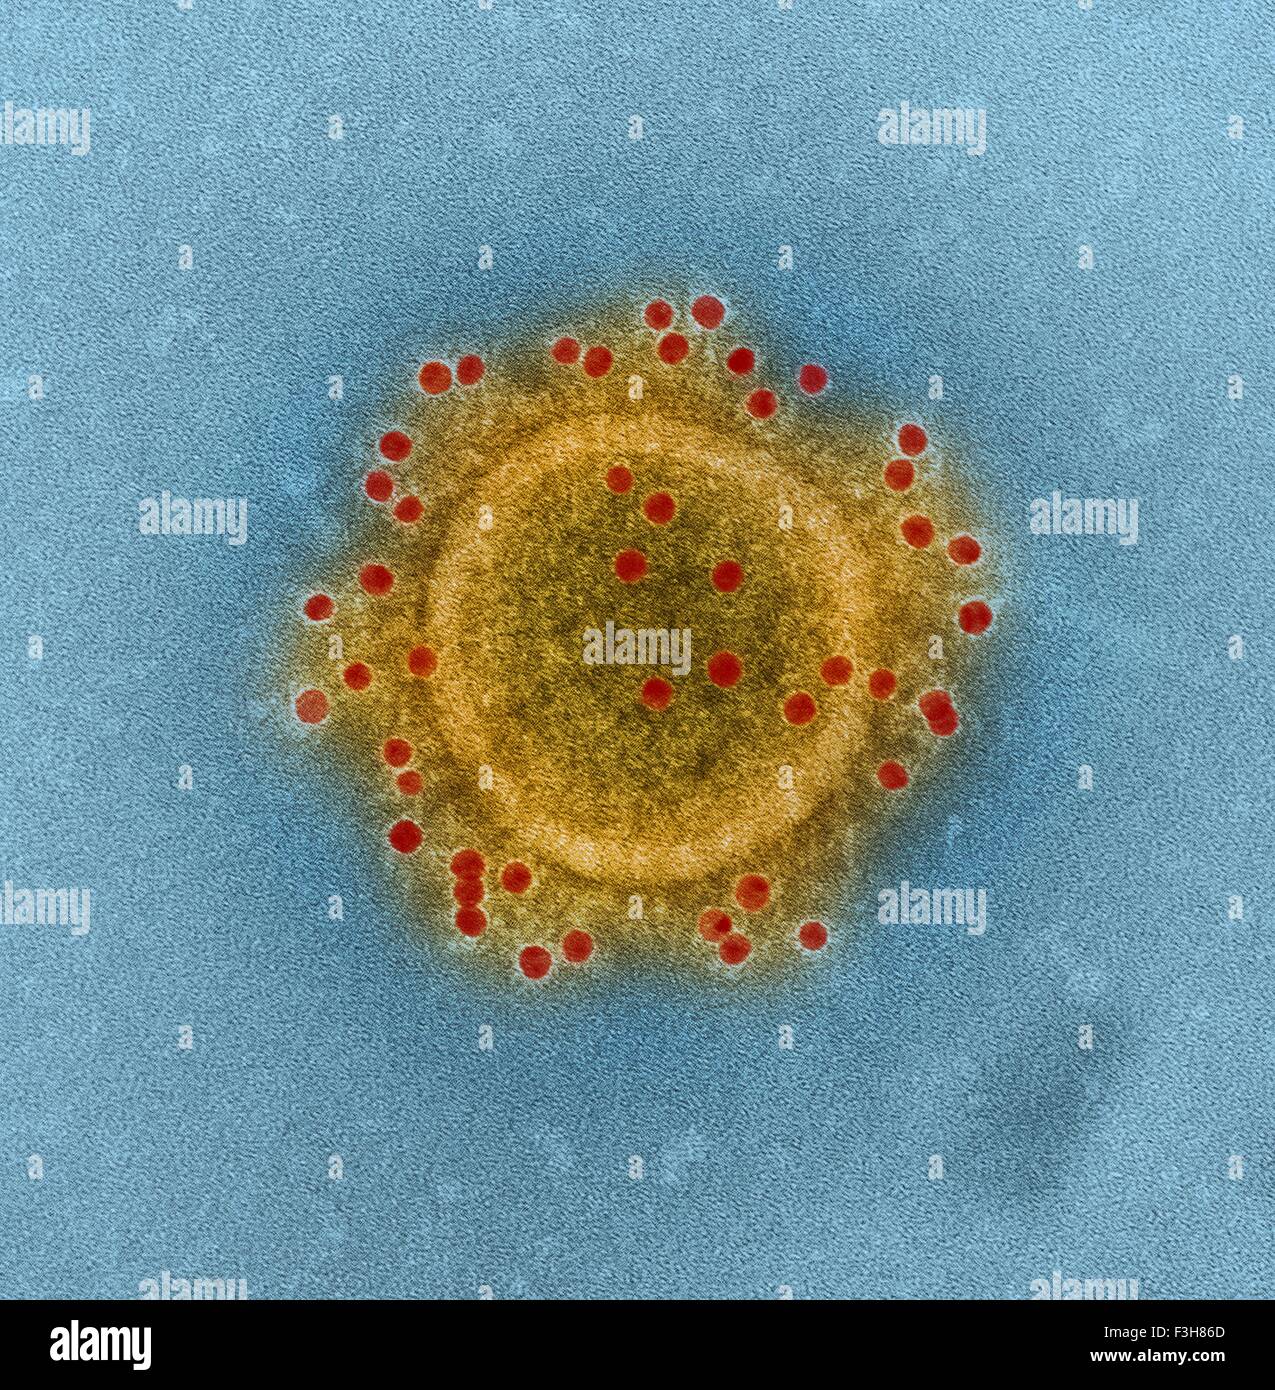 MERS Coronavirus particle Stock Photo